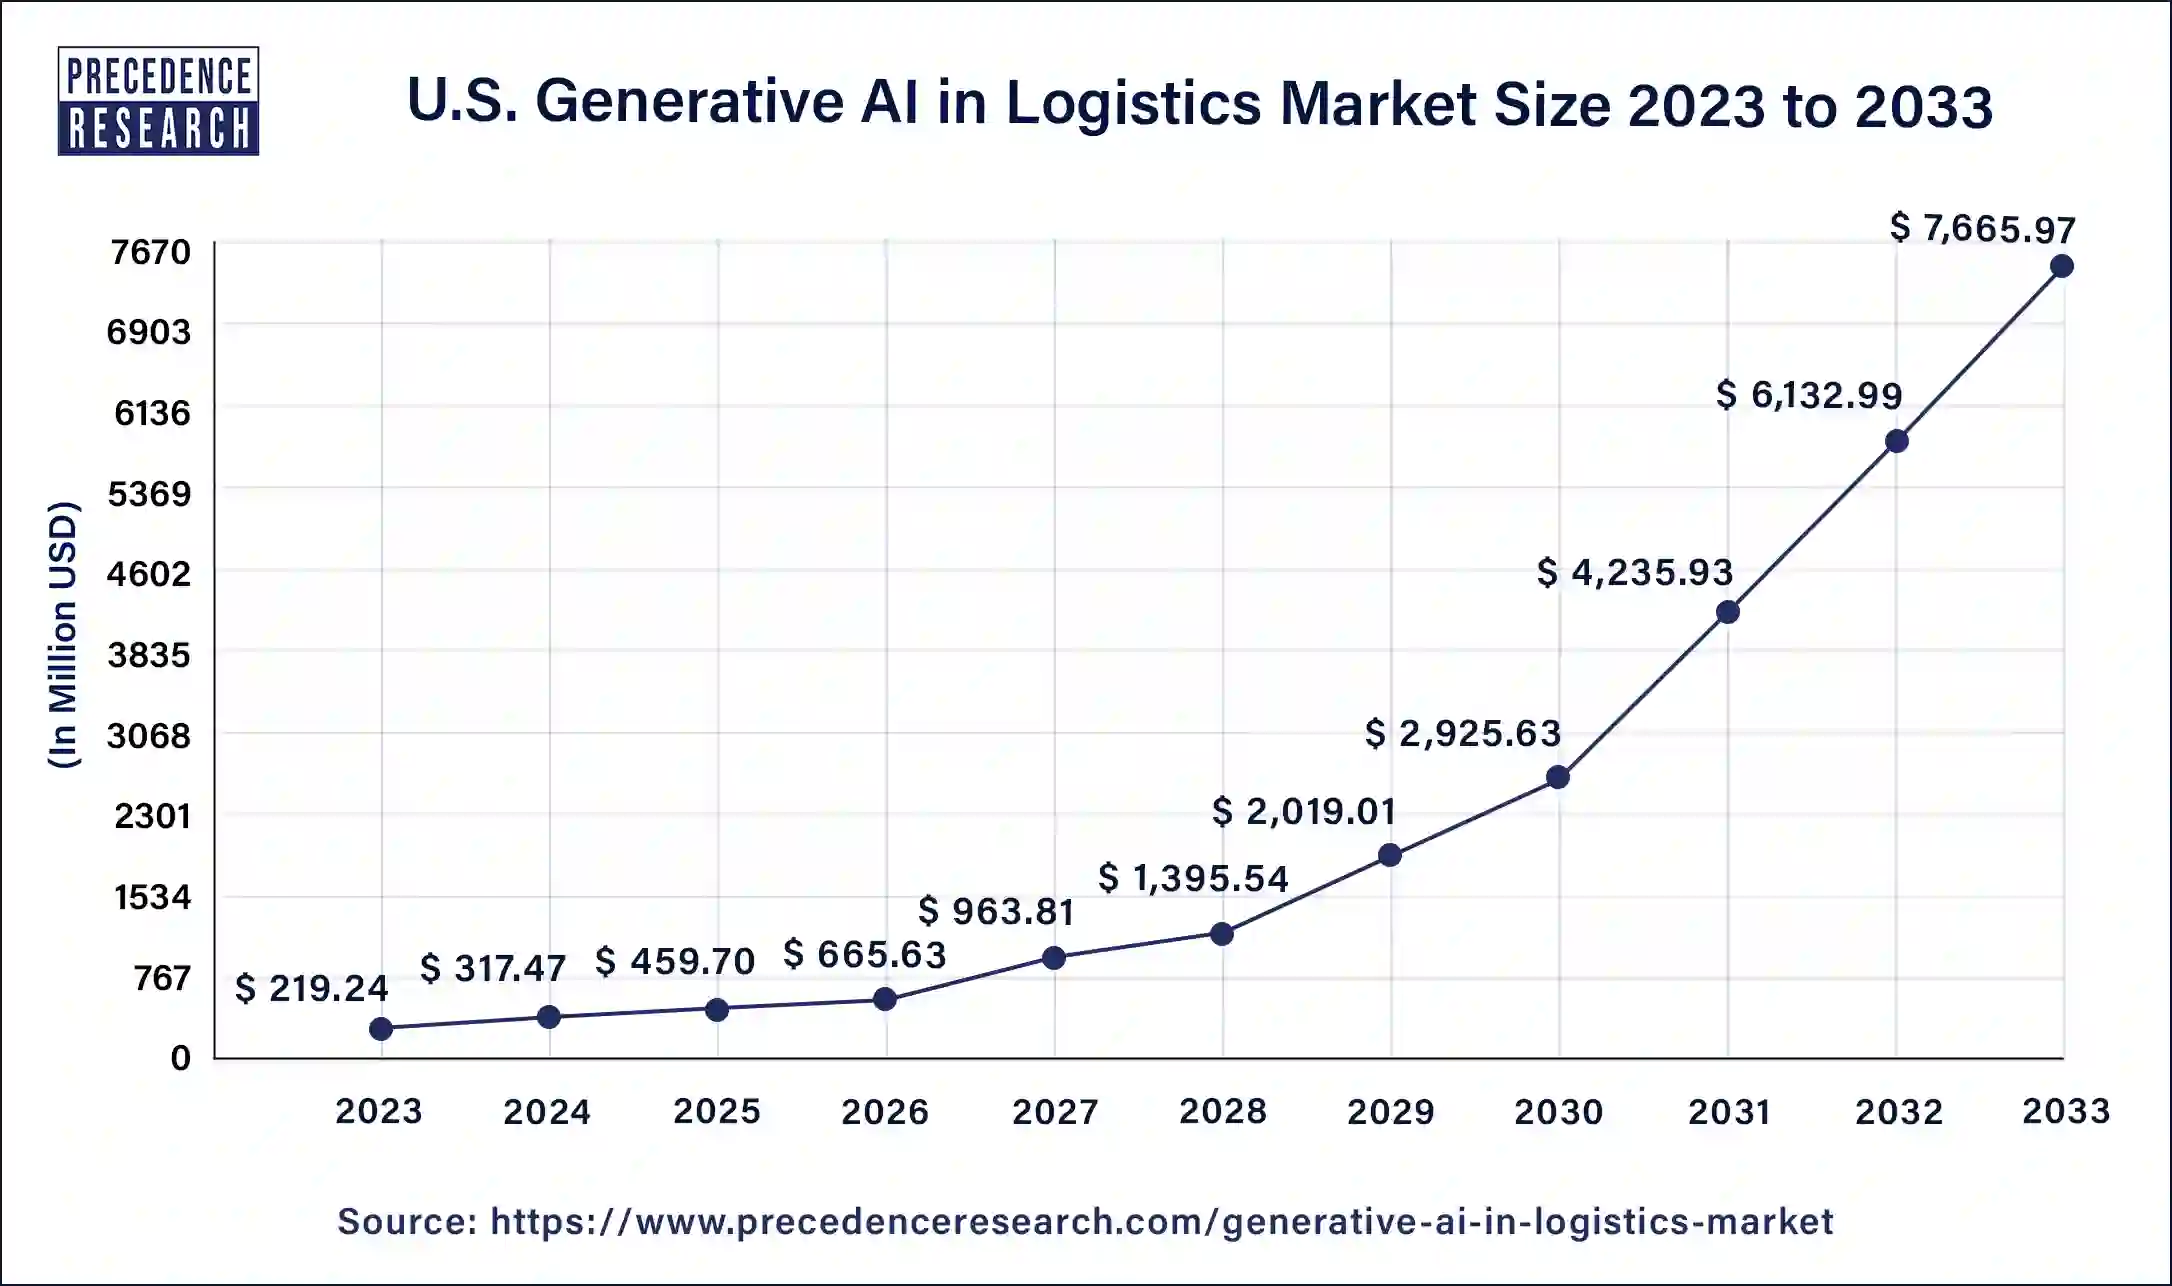 U.S. Generative AI in Logistics Market Size 2024 to 2033